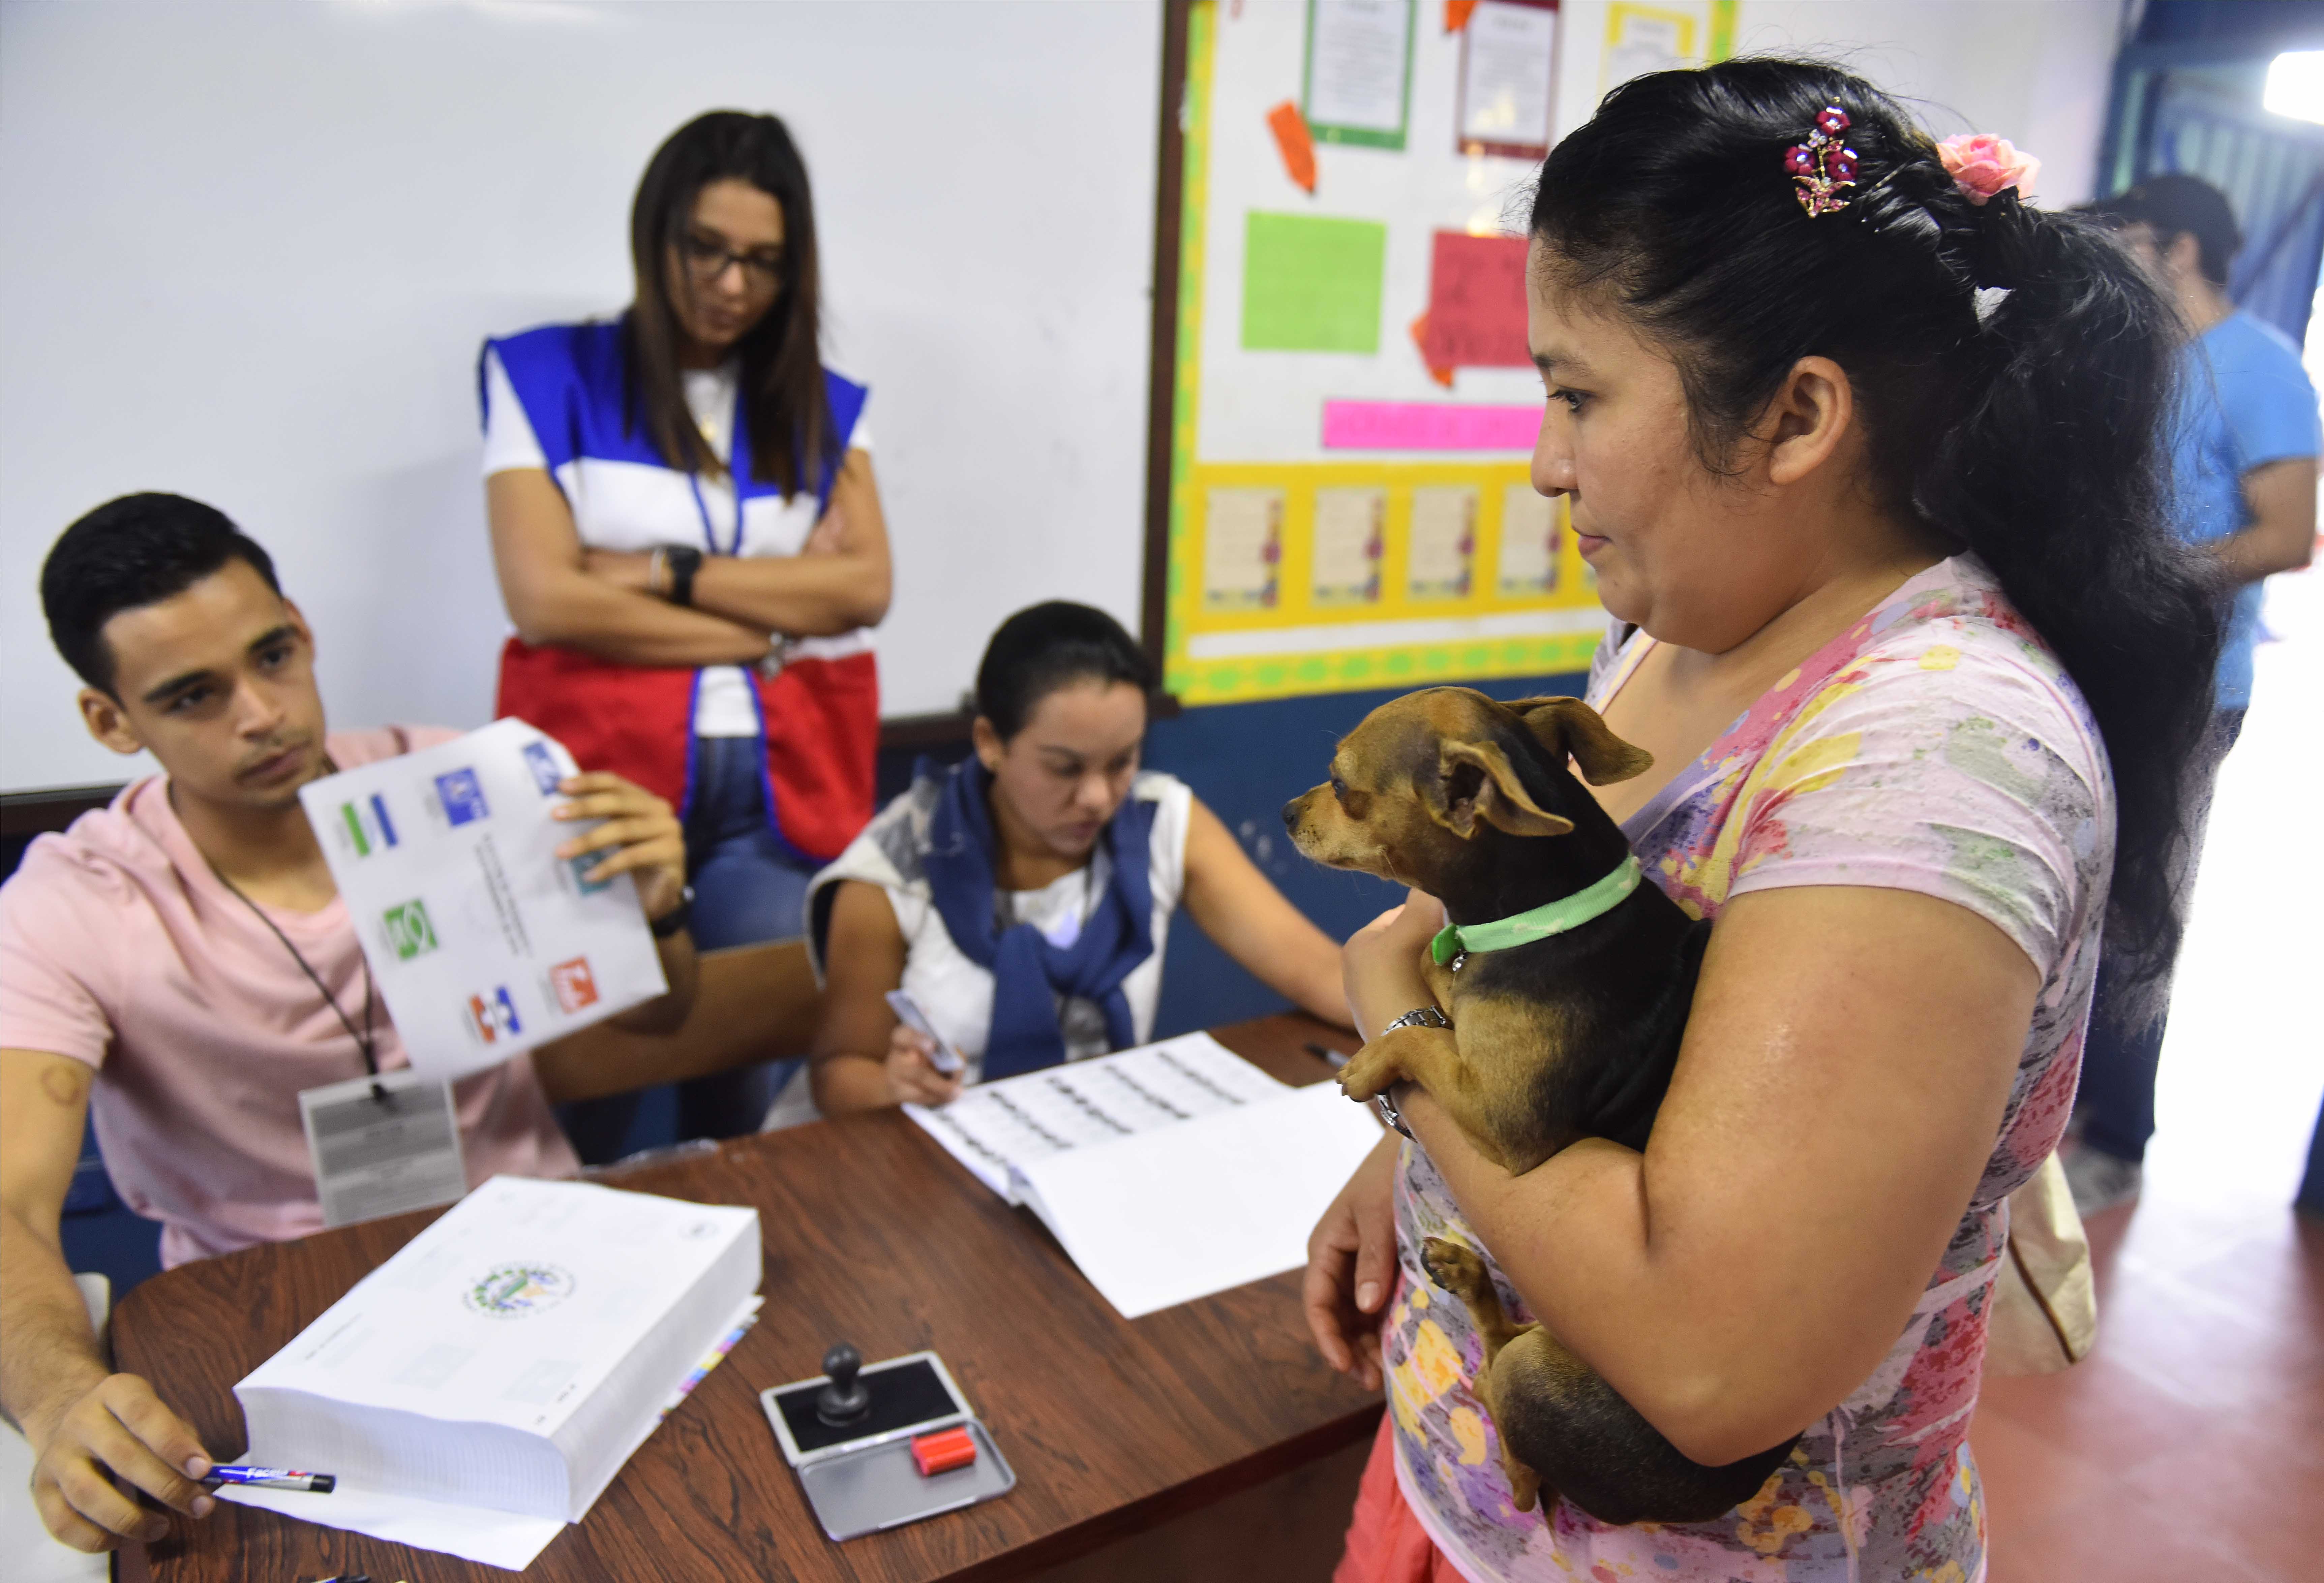 FOTOS Así transcurrieron las elecciones en El Salvador Gallery CNN